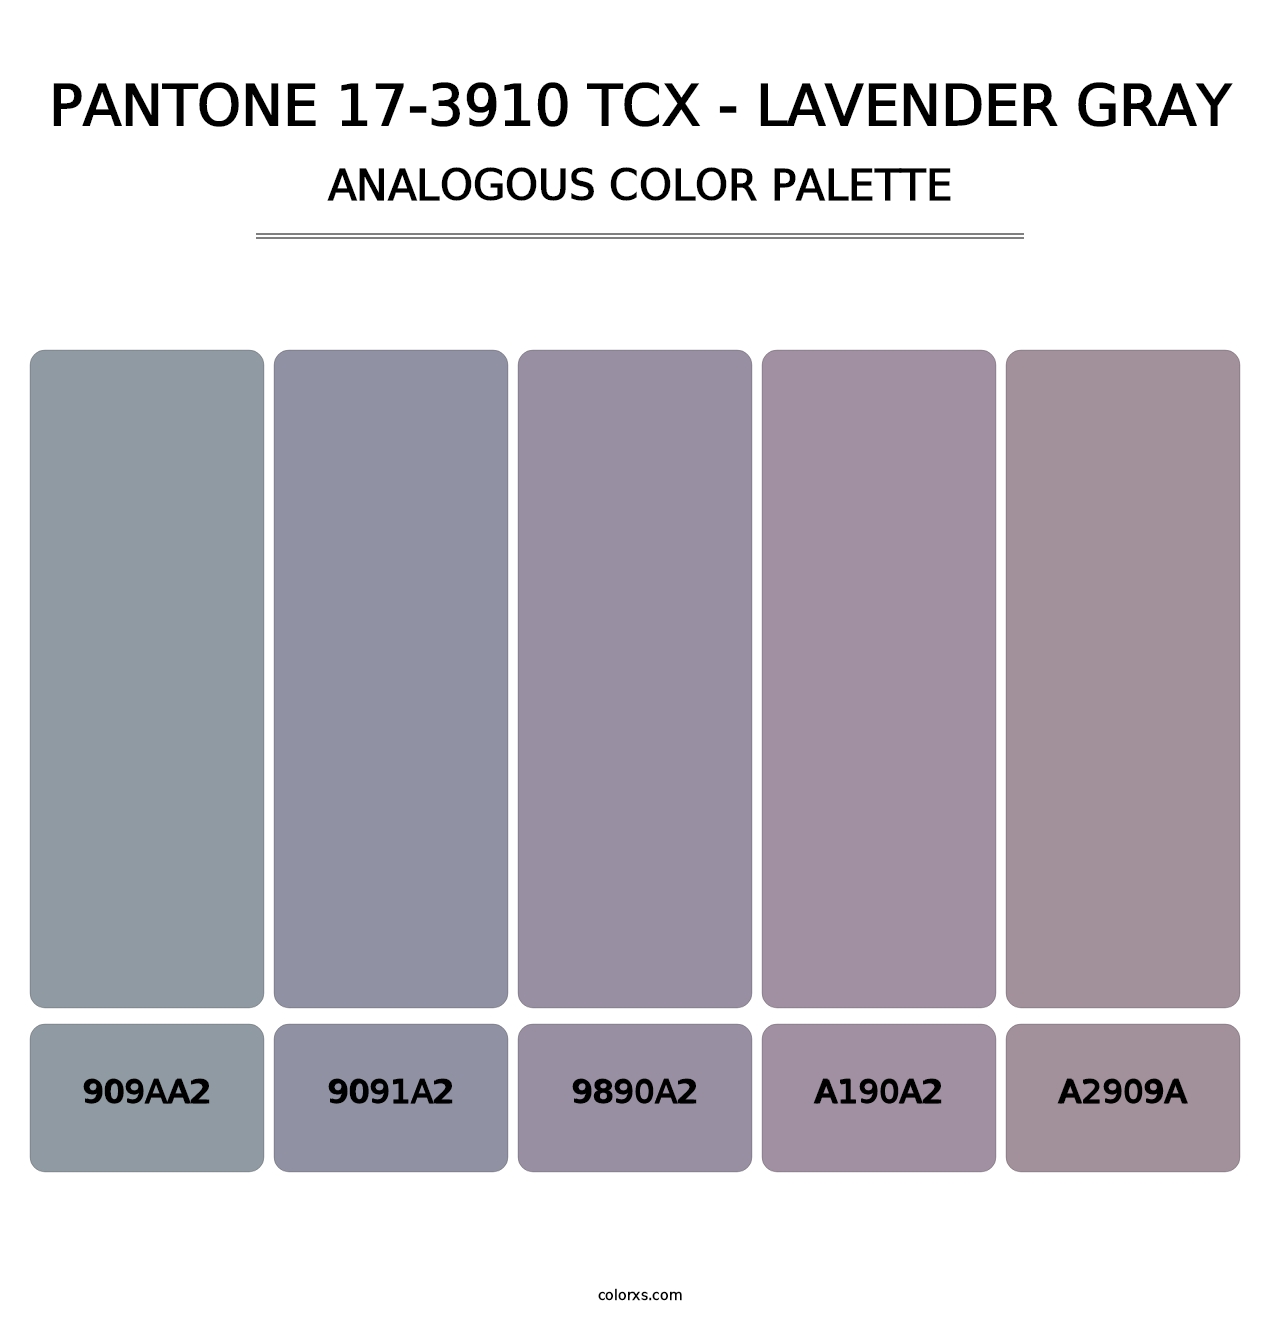 PANTONE 17-3910 TCX - Lavender Gray - Analogous Color Palette